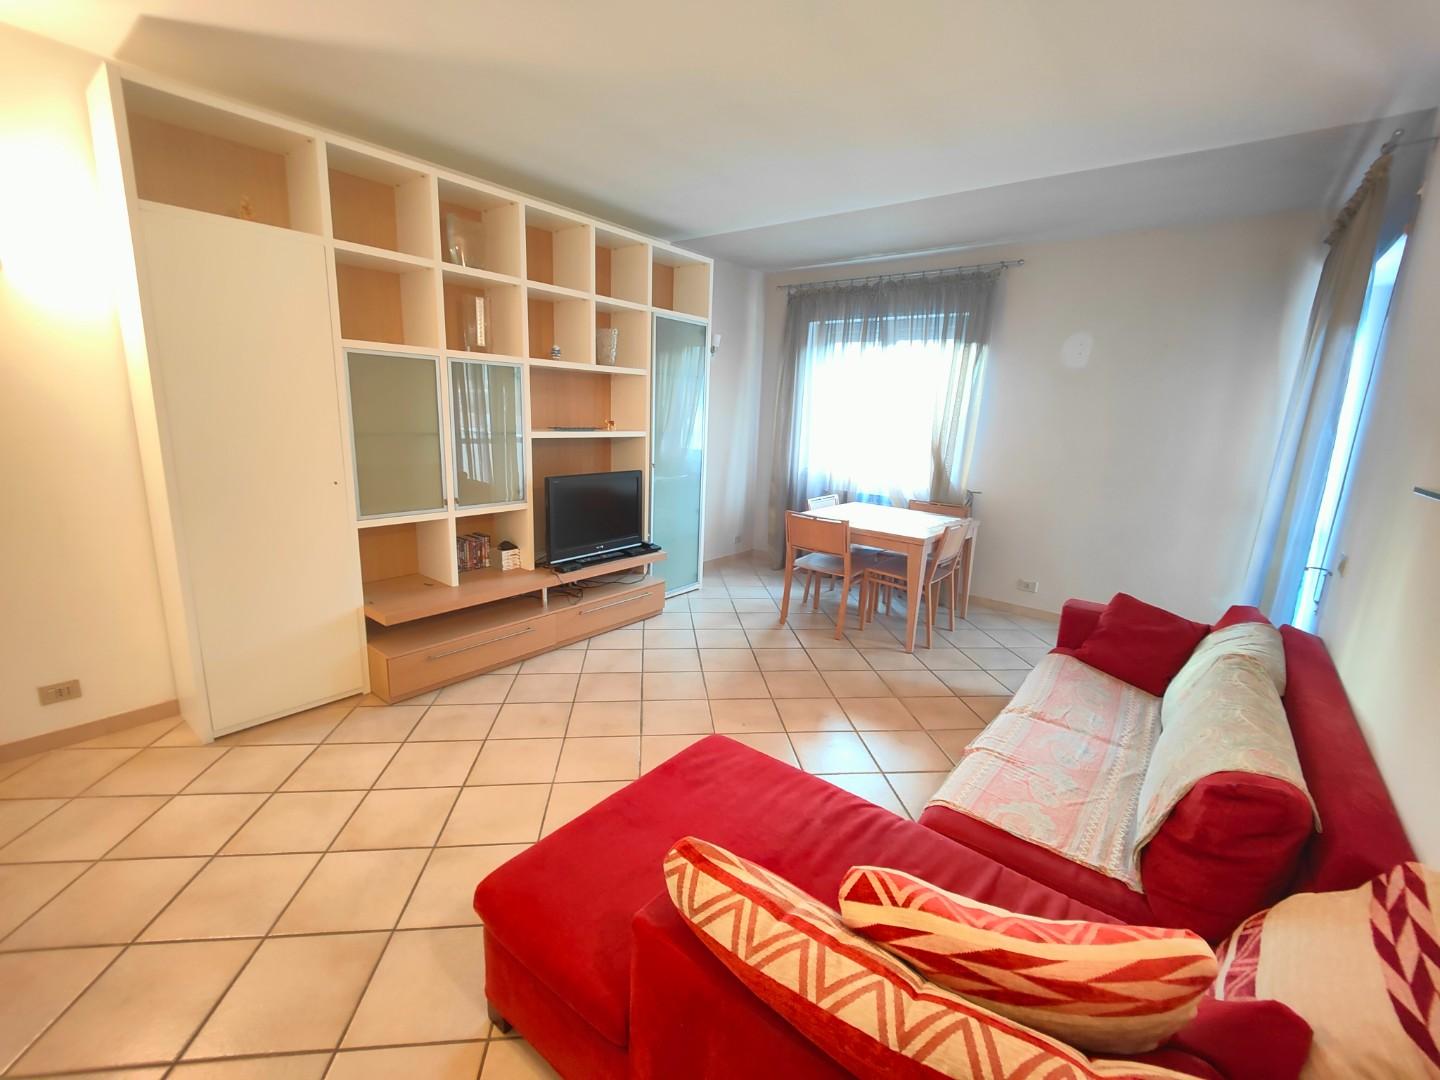 Appartamento in affitto a Sarzana, 4 locali, prezzo € 750 | PortaleAgenzieImmobiliari.it